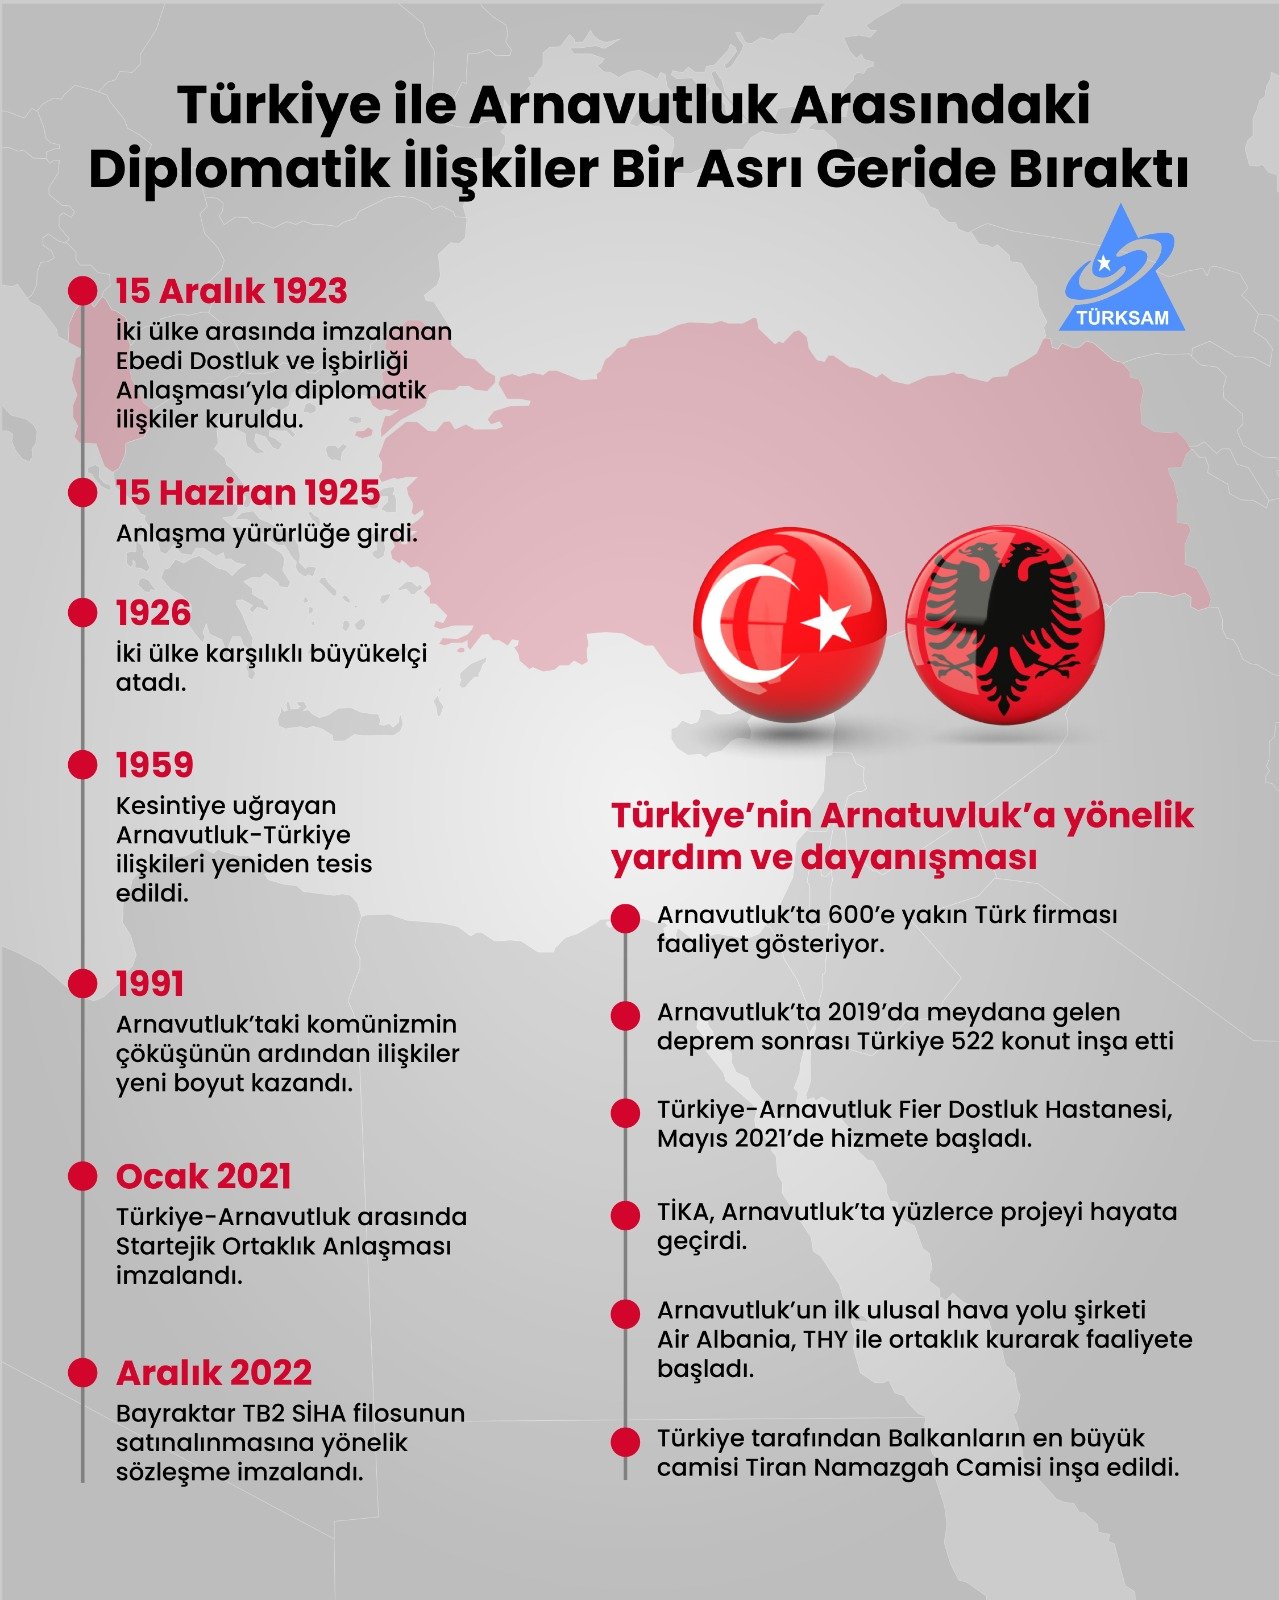 Türkiye ile Arnavutluk Arasındaki Diplomatik İlişkiler Bir Asrı Geride Bıraktı